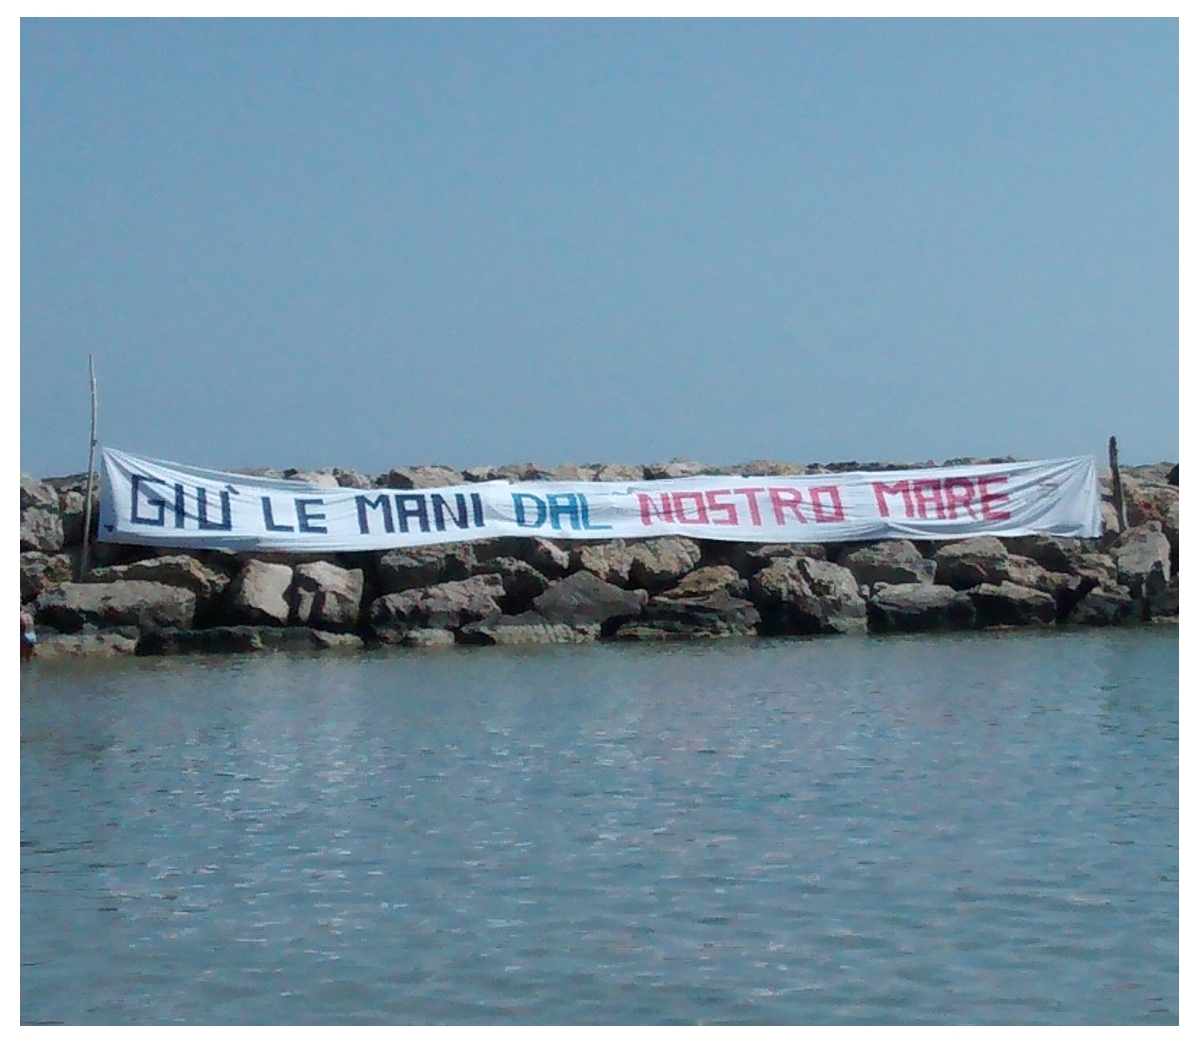 ‘Giù le mani dal nostro mare’, ad agosto il tour del M5S in quattro regioni per dire no alle trivellazioni